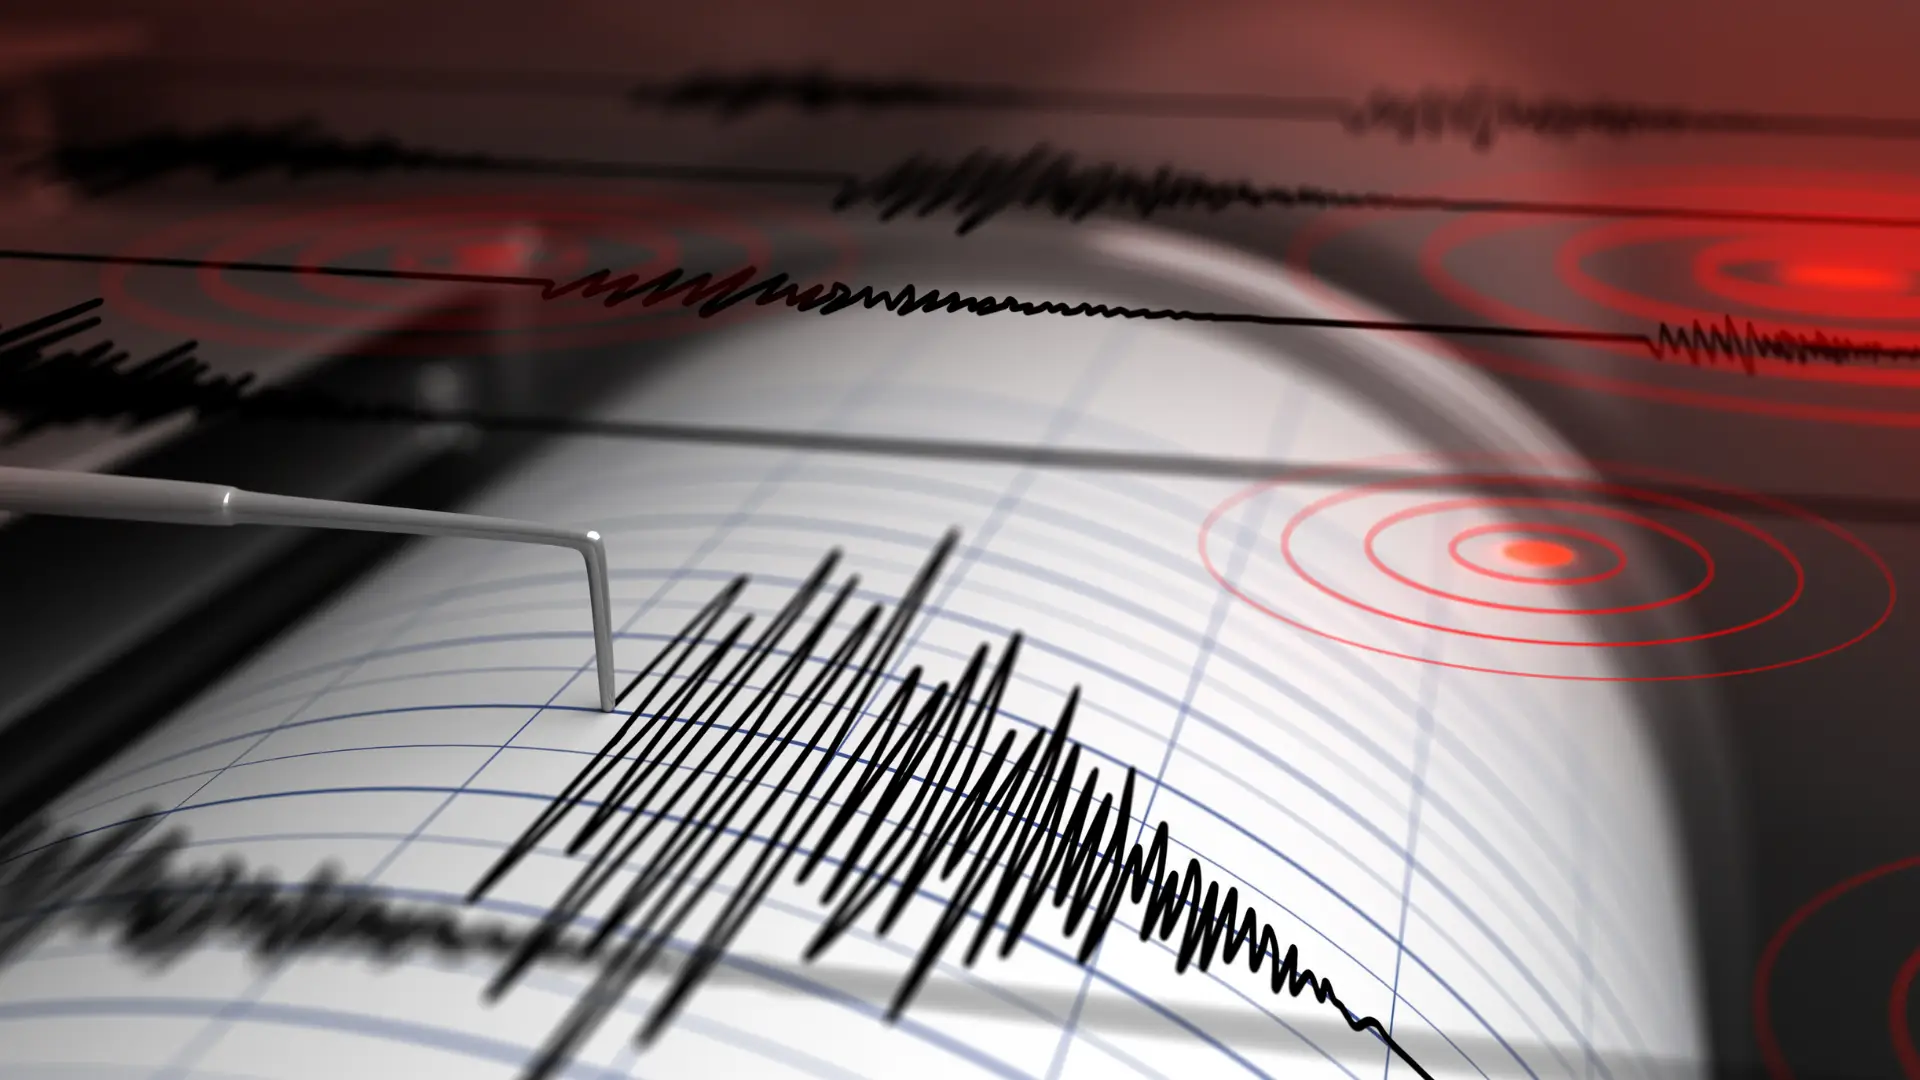 Sismo de magnitude 2,5 registado no Norte de Portugal